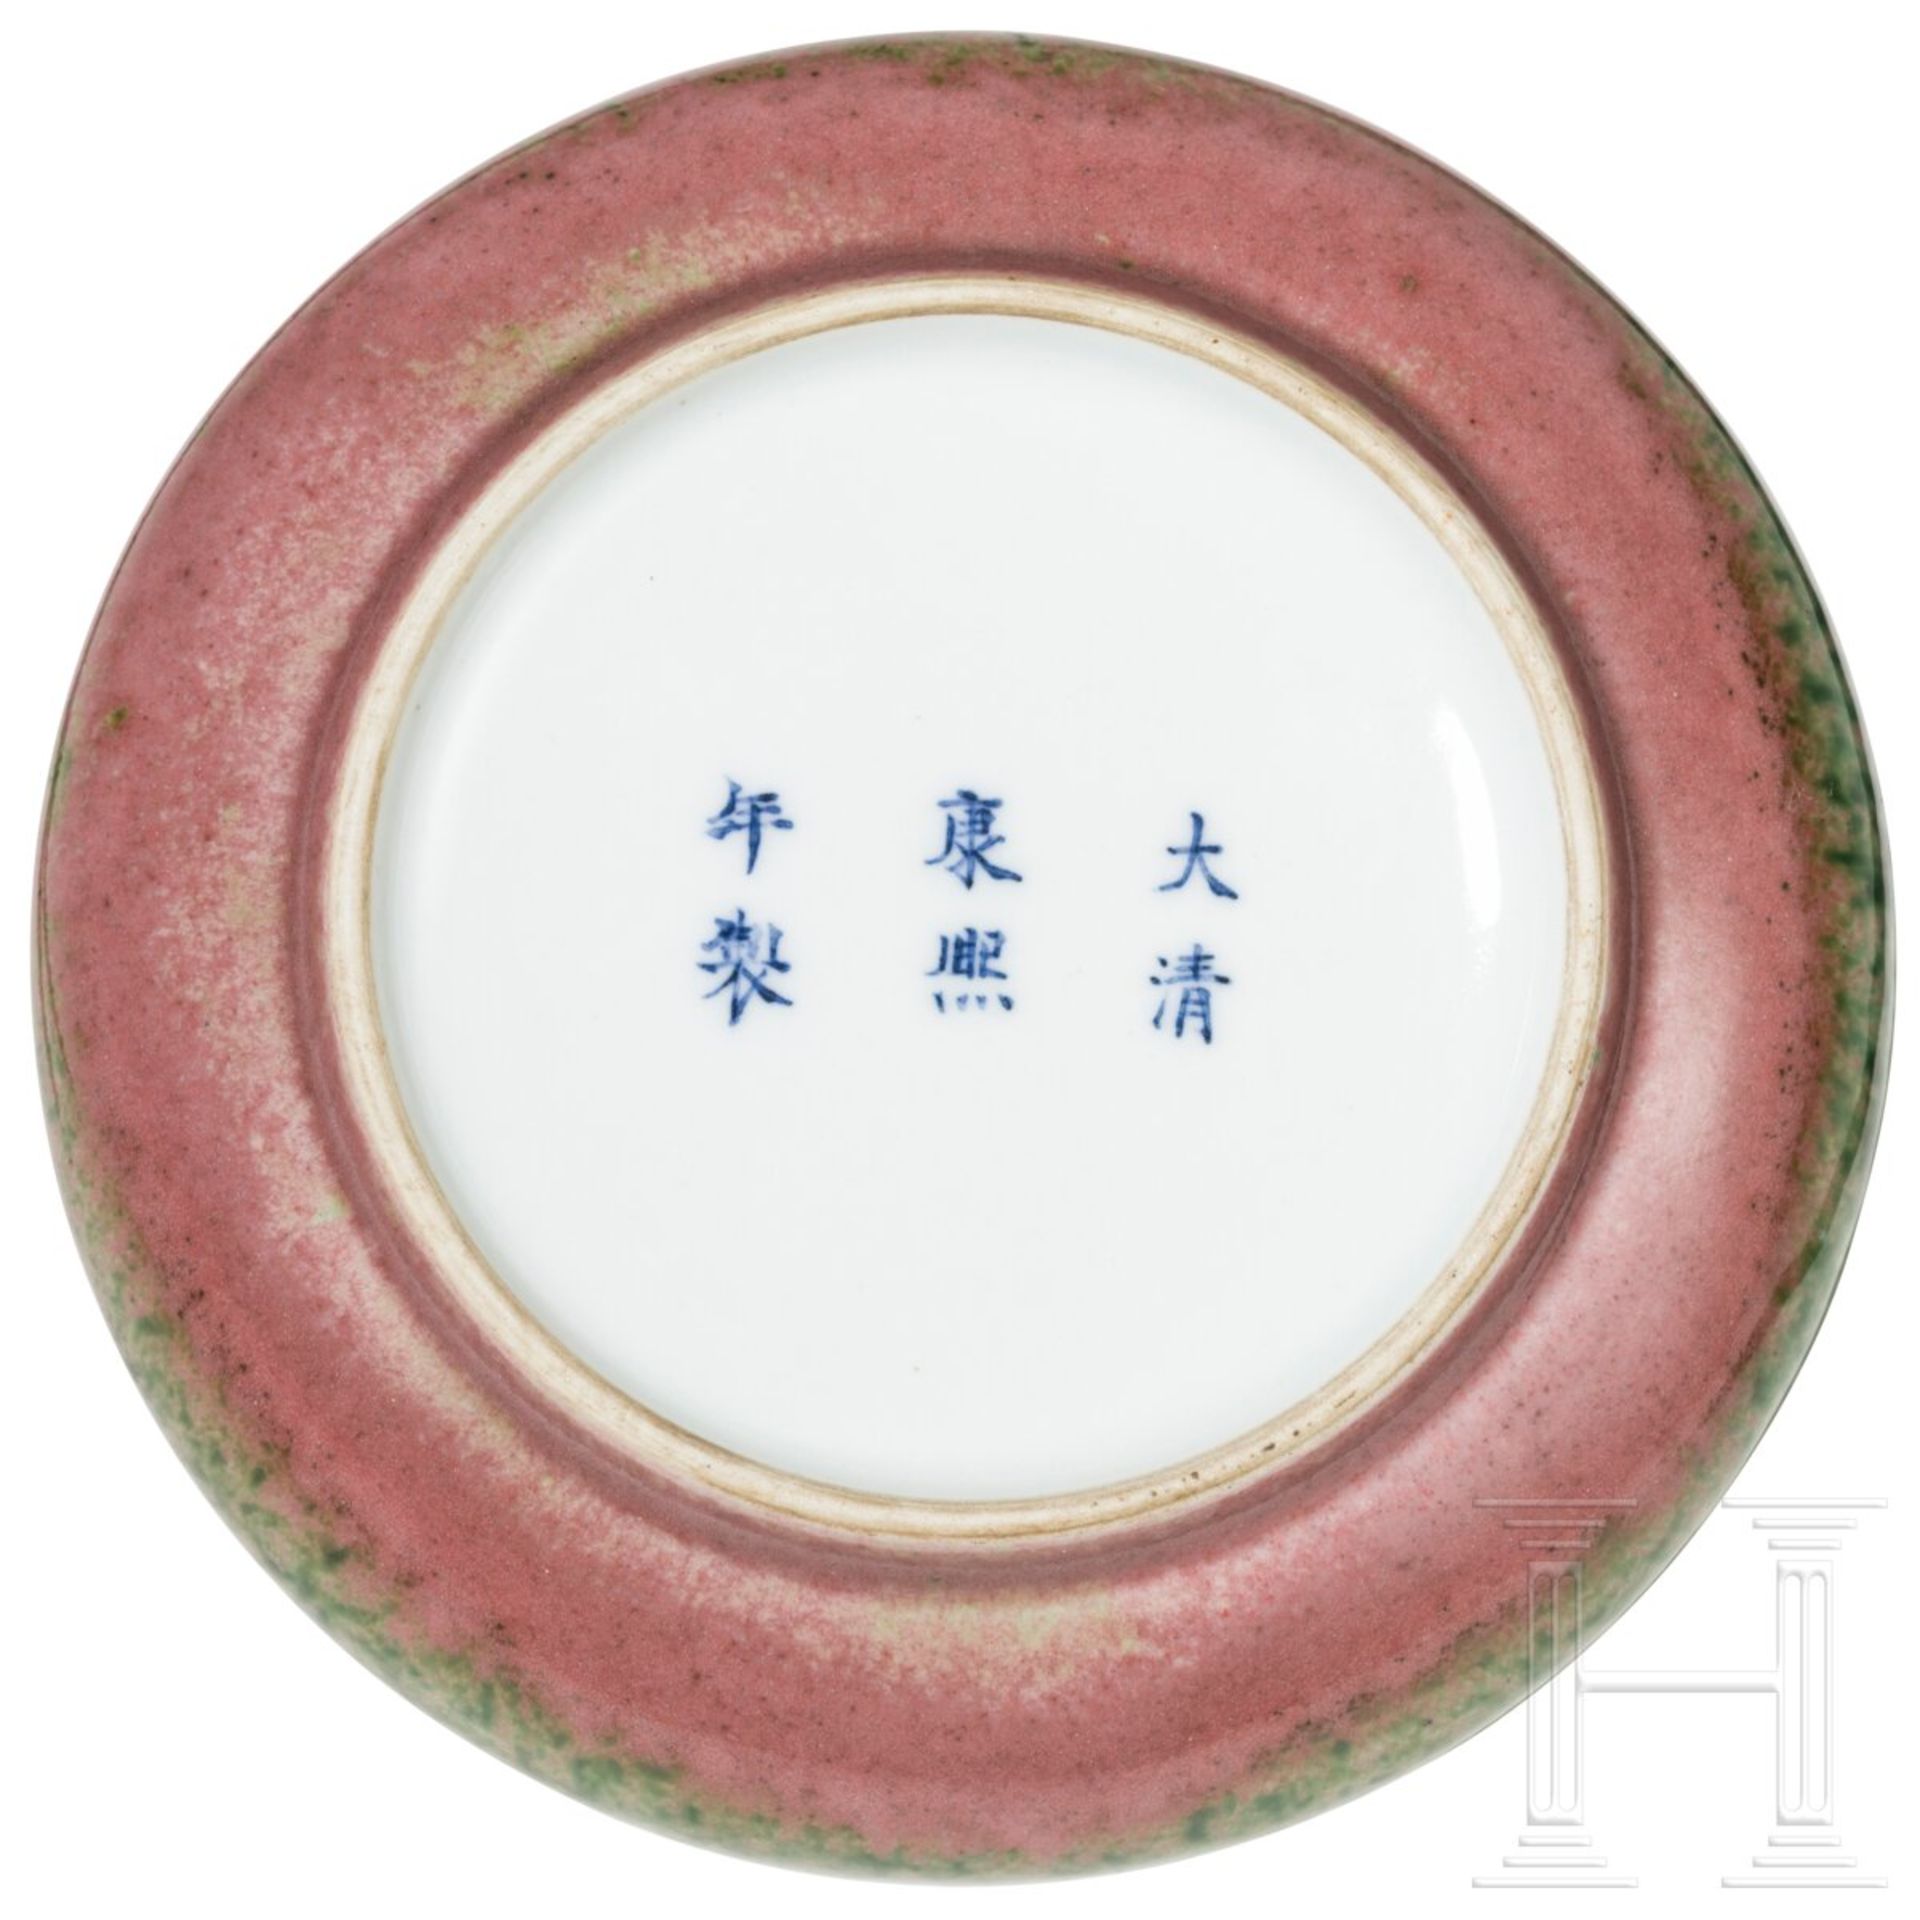 Pfirsichblütenfarben glasierte Pinselwaschschale mit Kangxi-Marke, China, wahrscheinlich aus dieser - Image 5 of 21